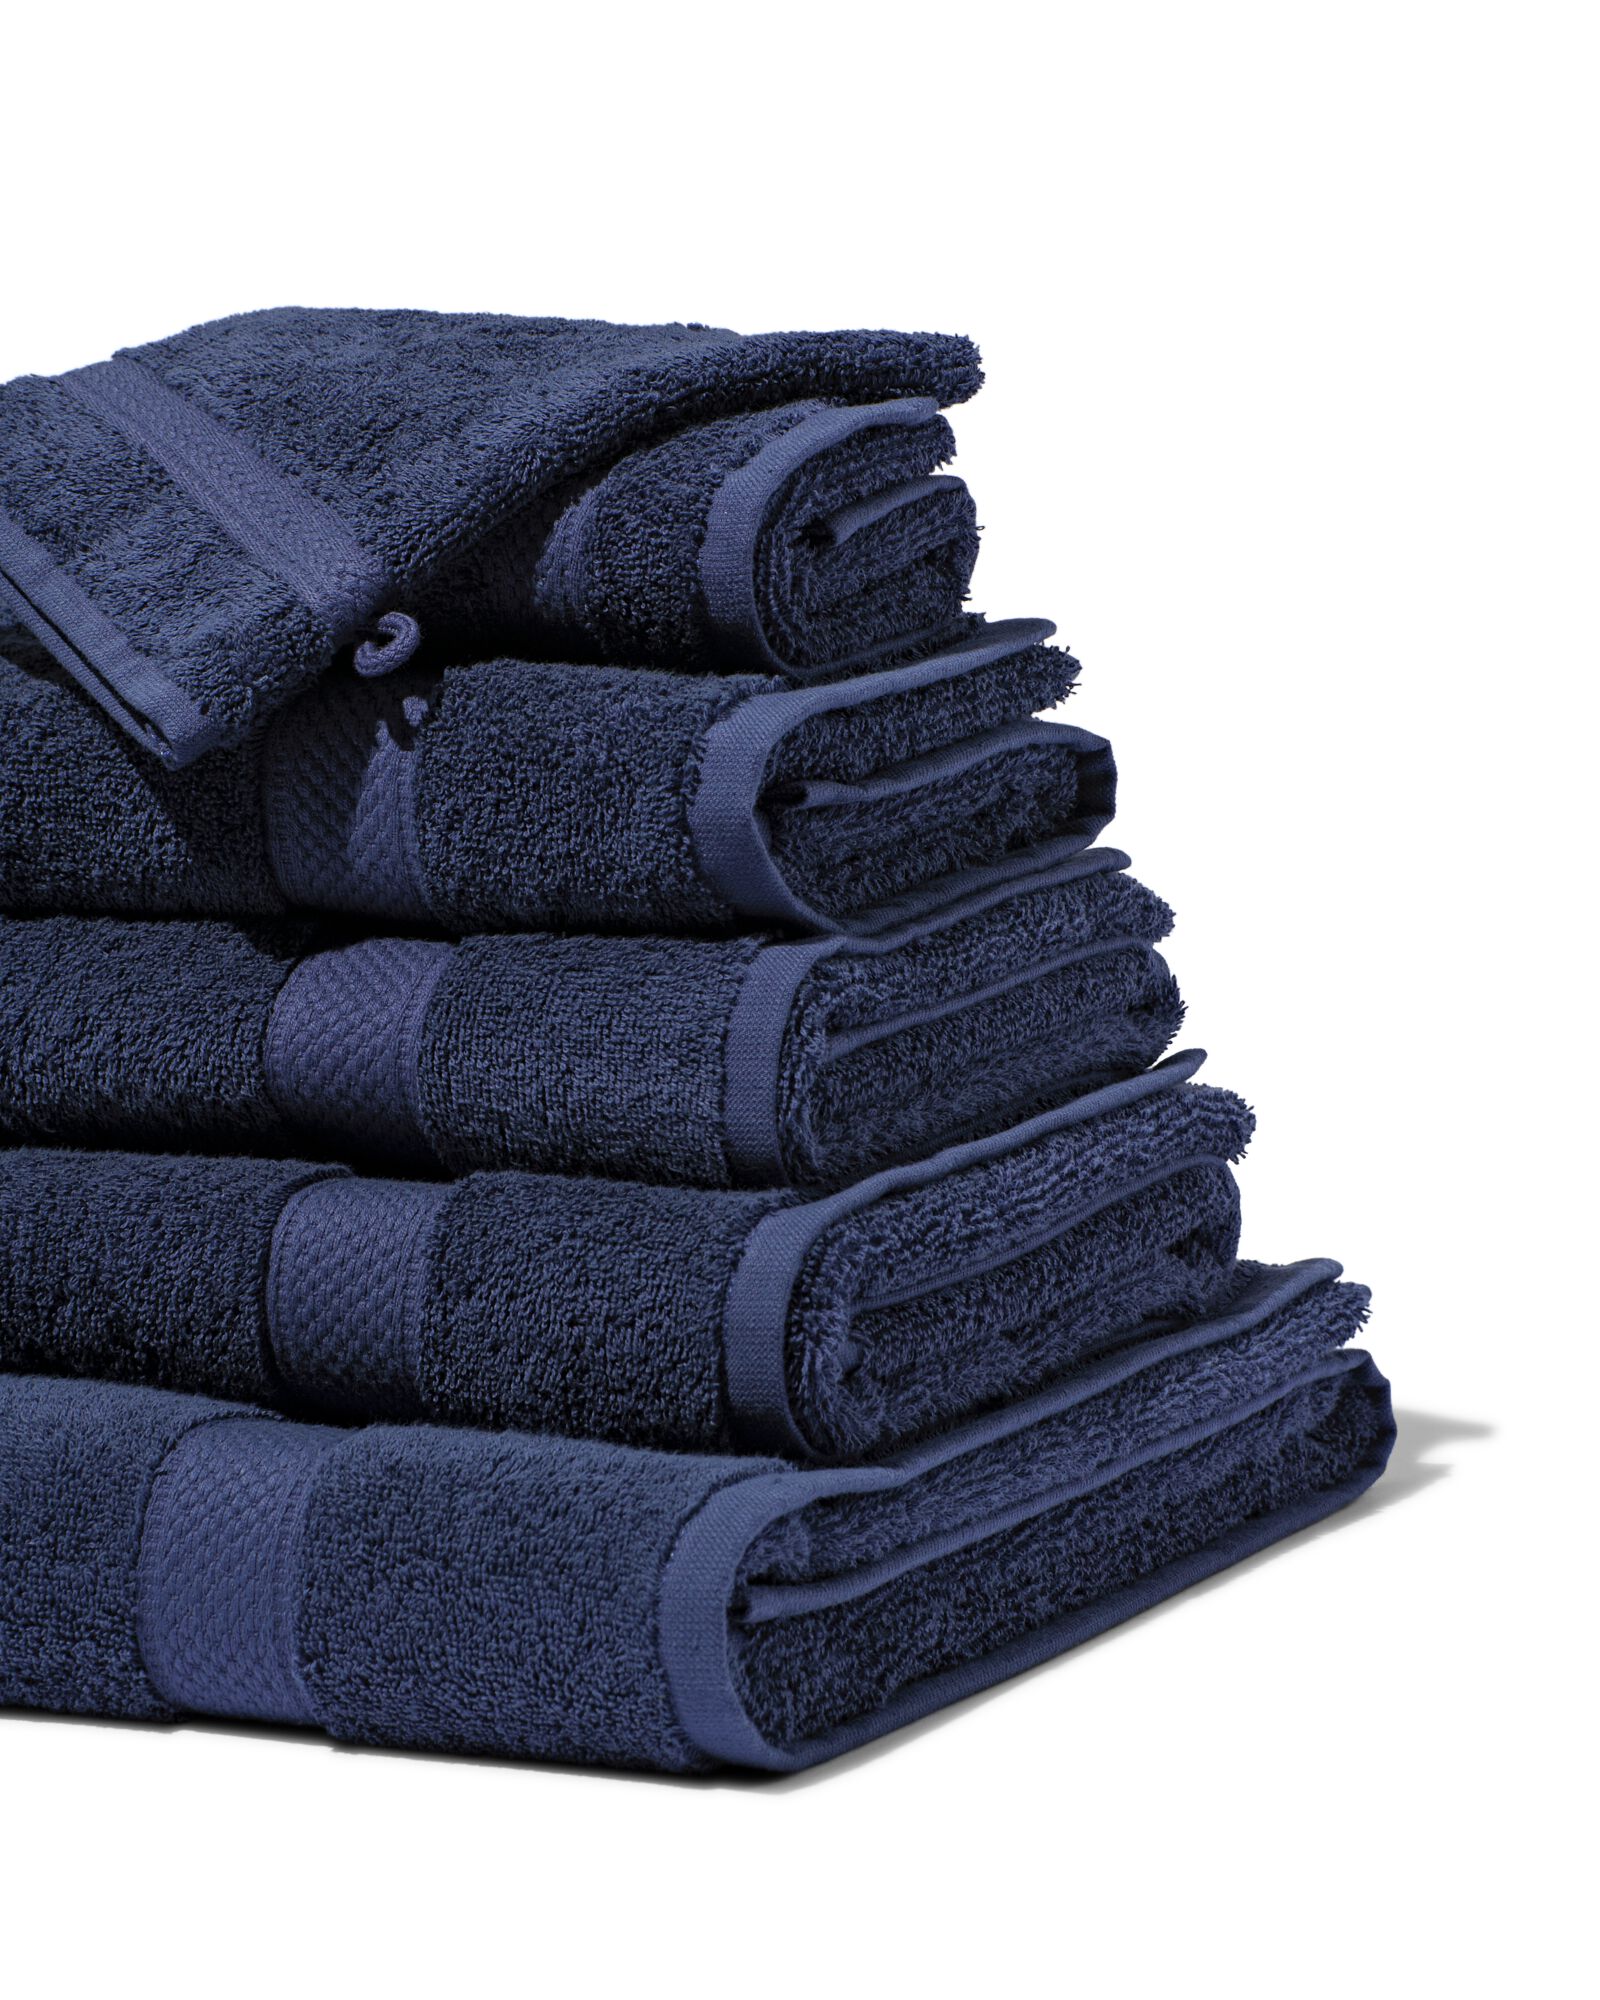 hema serviettes de bain - qualité épaisse bleu nuit (bleu nuit)